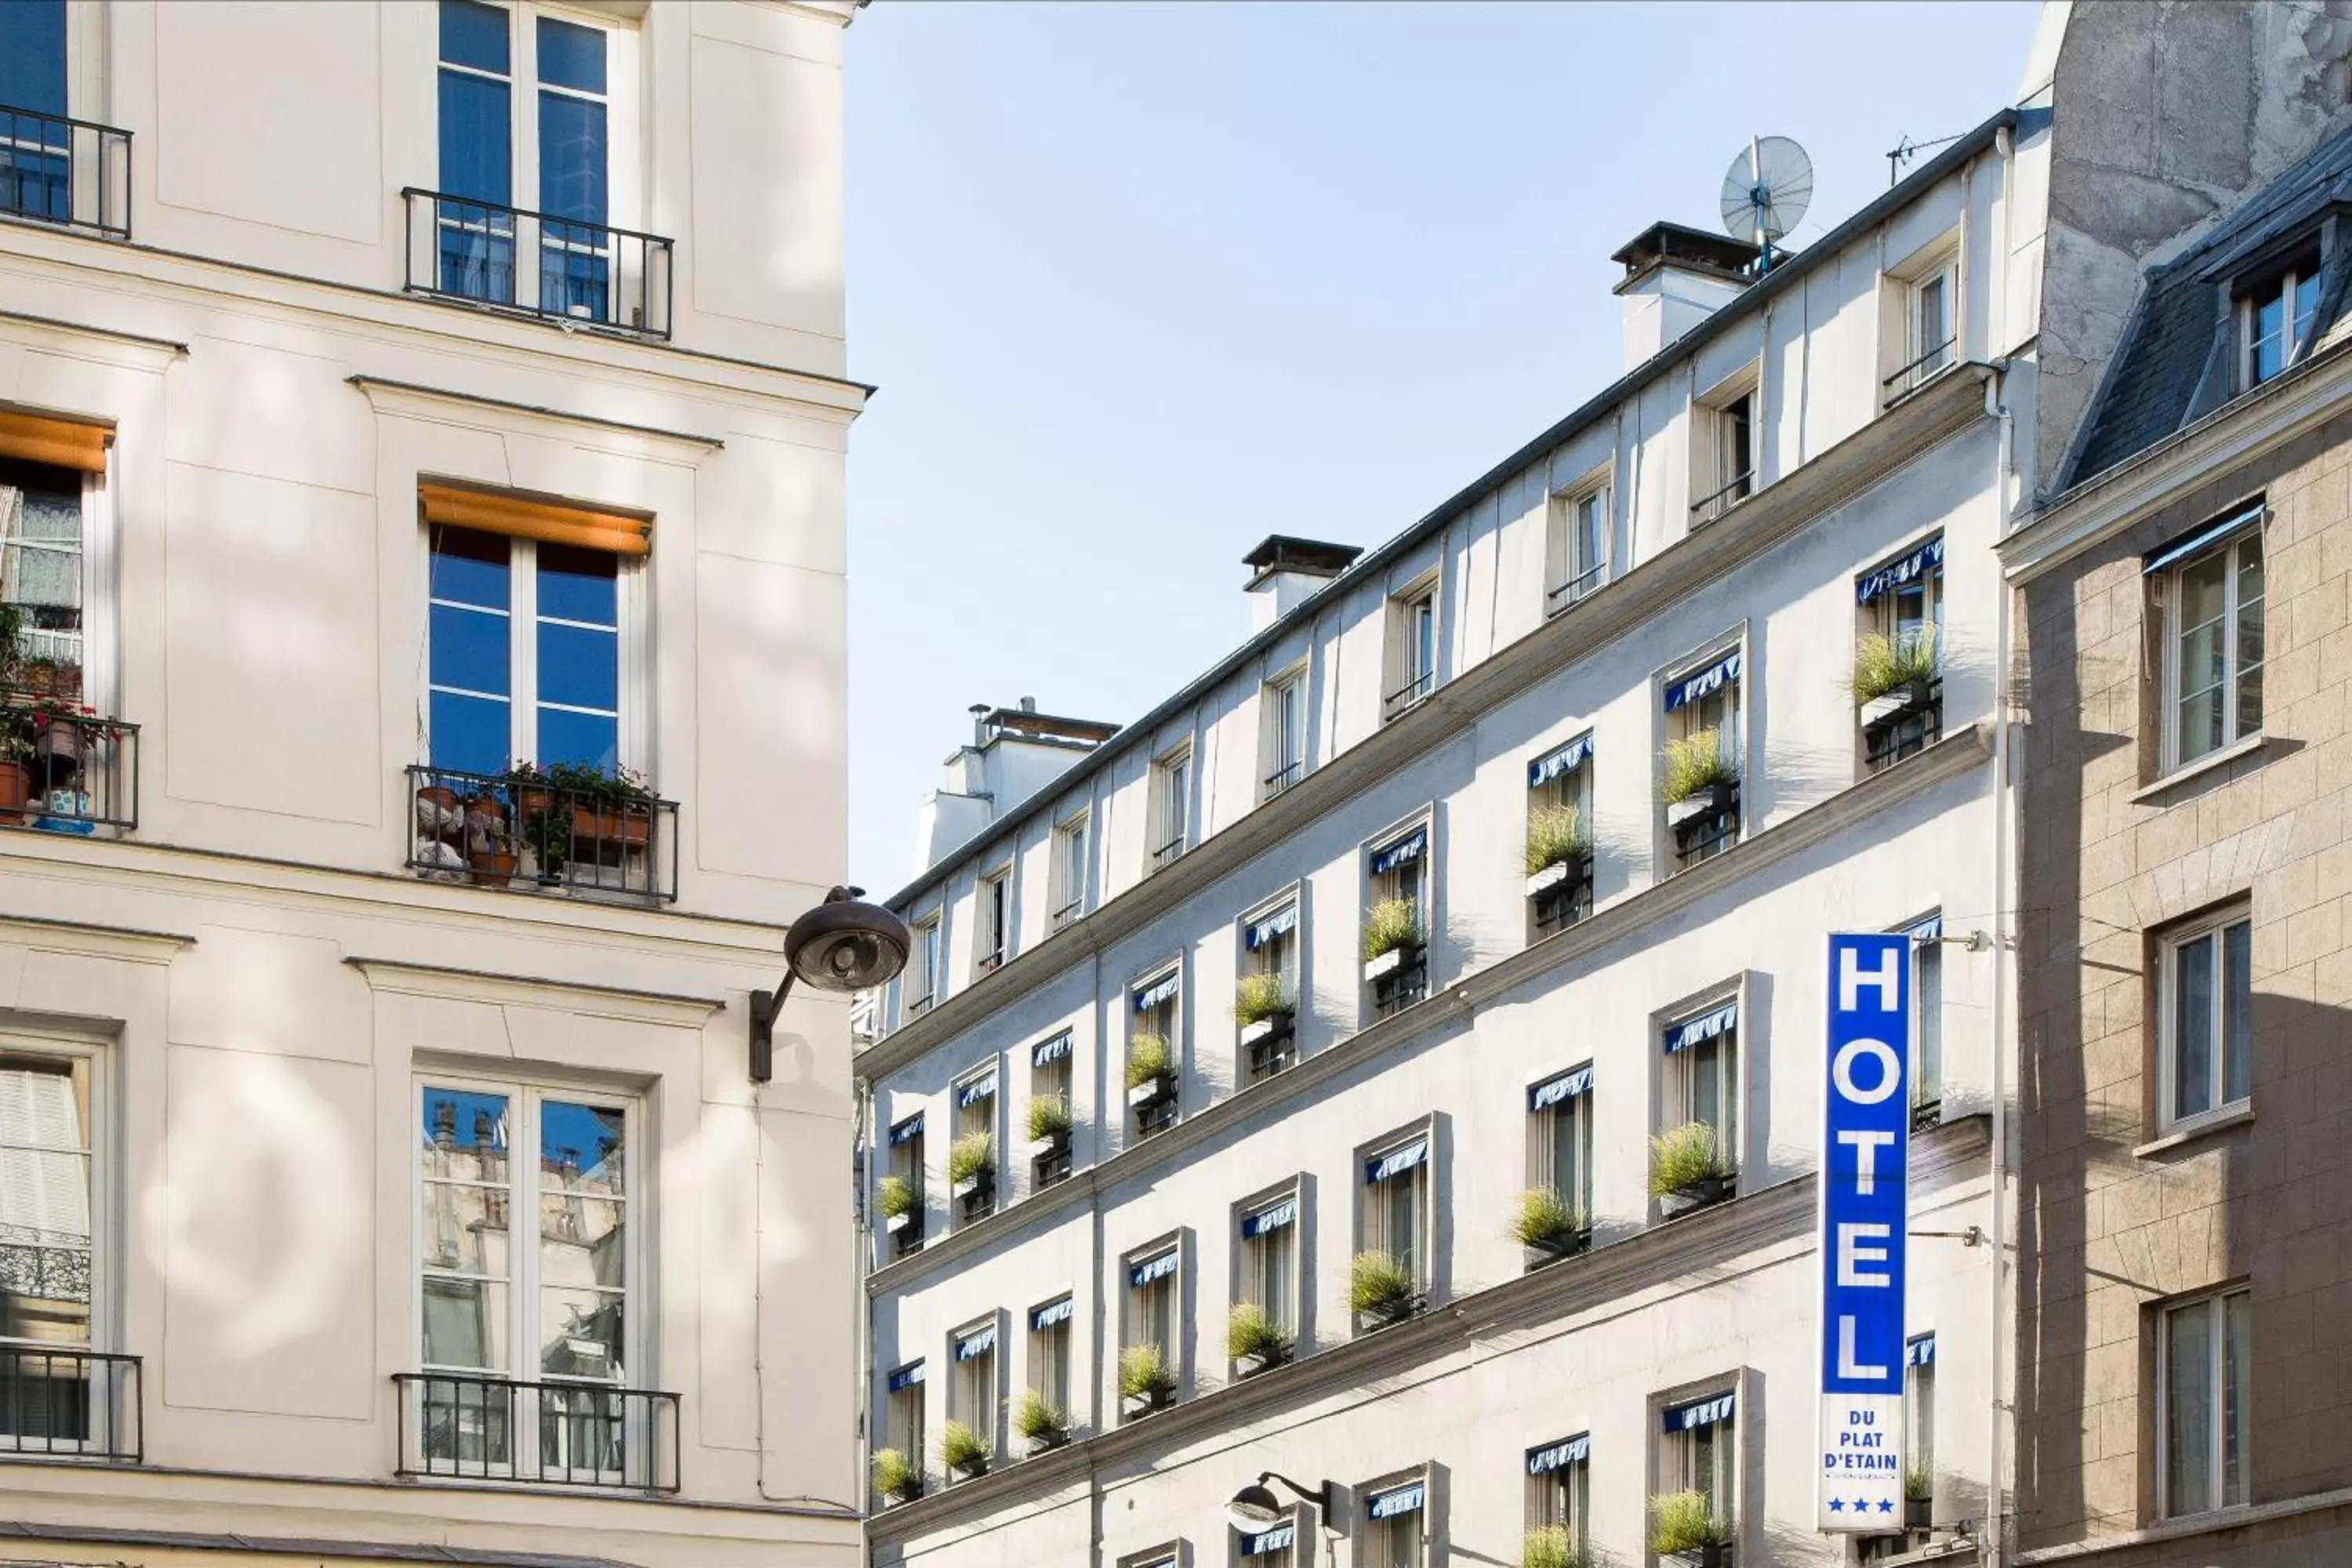 Property Building in Hôtel du Plat d'Etain